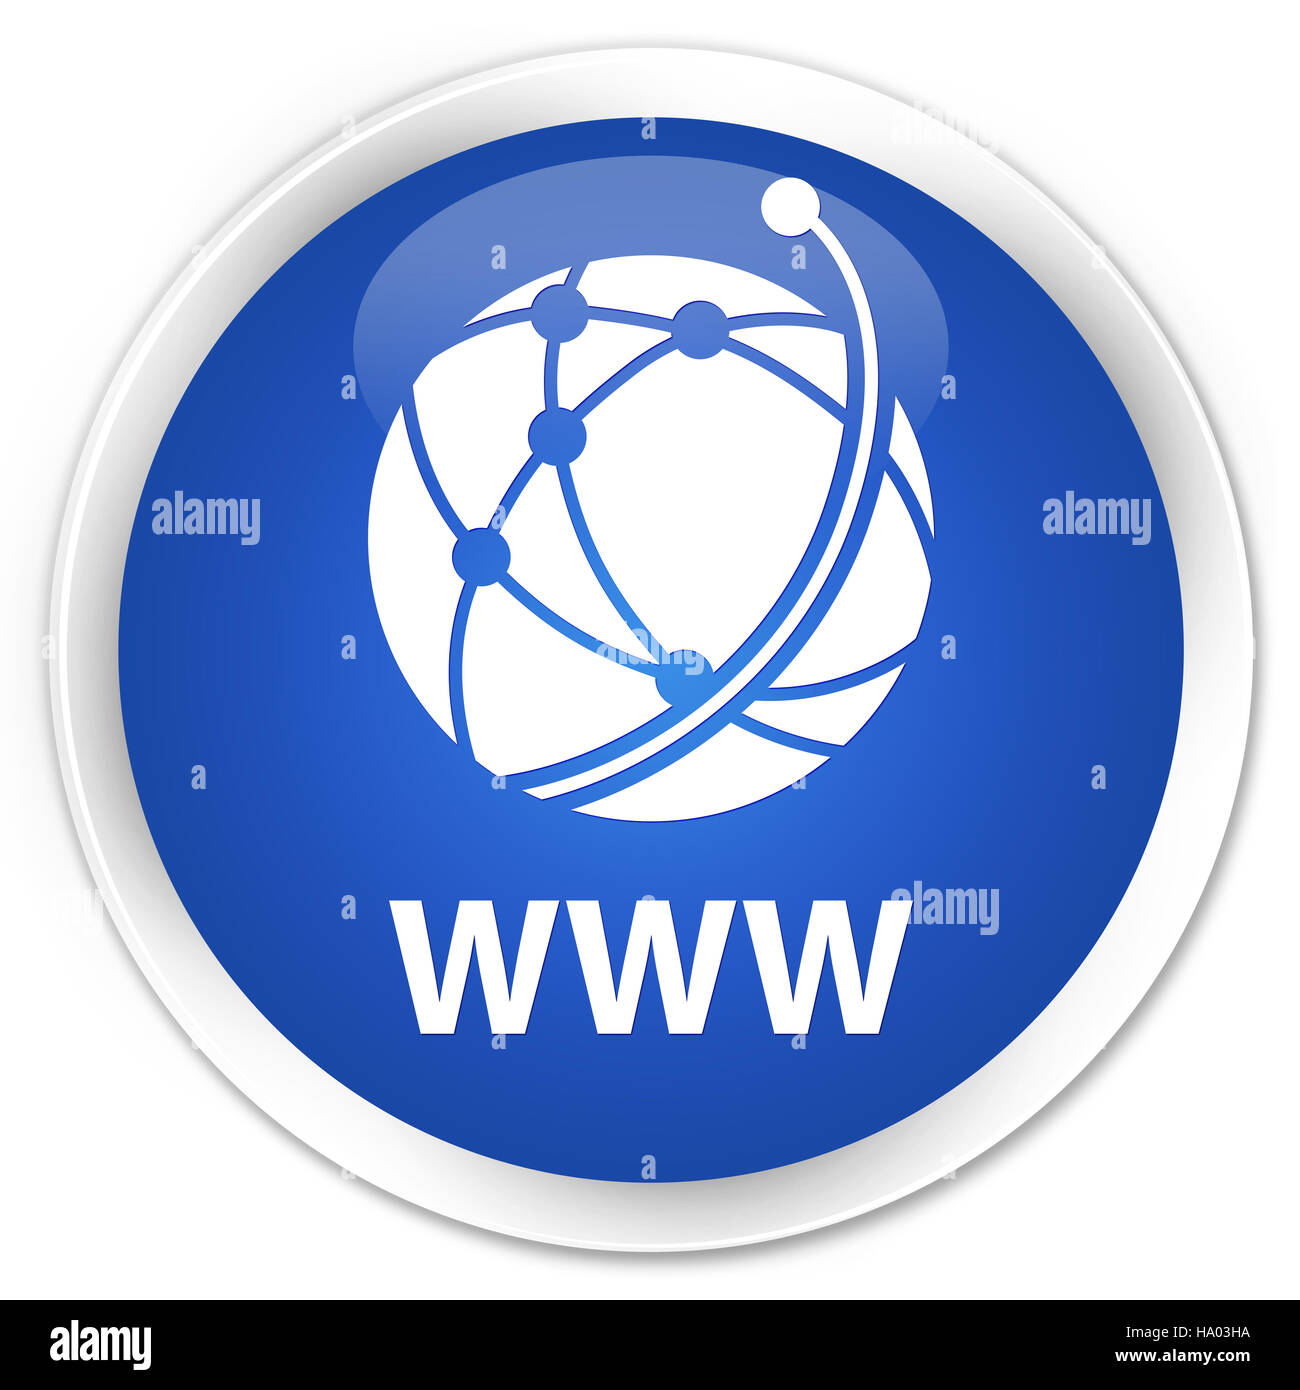 WWW (globales Netzwerk-Symbol) auf Premium-blau Runde Taste abstrakte Abbildung isoliert Stockfoto